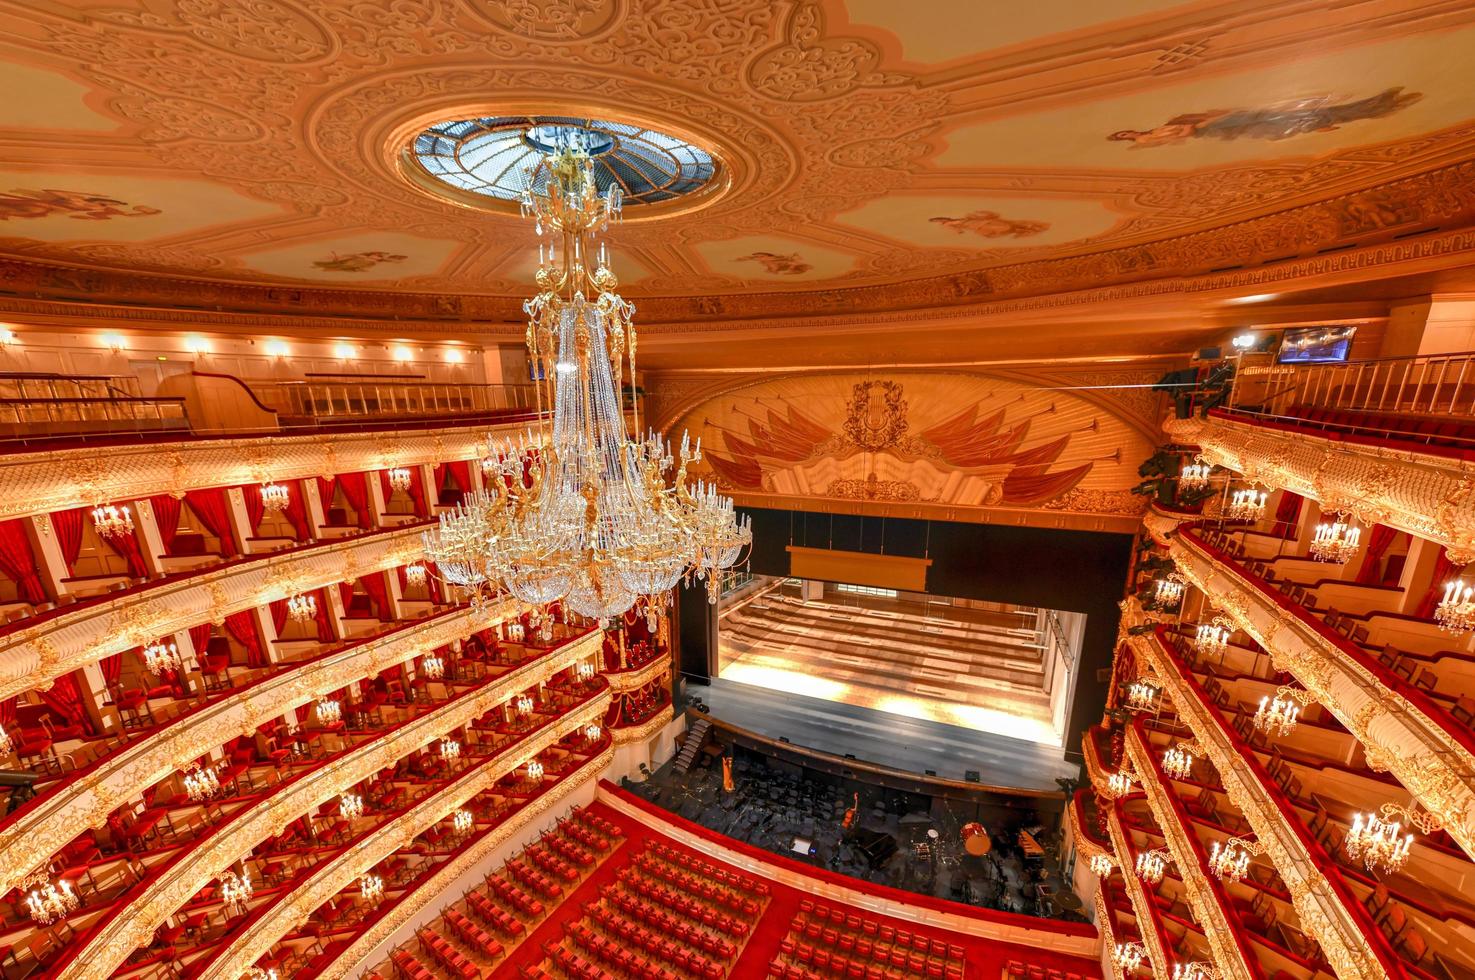 moscou, rússia - 27 de junho de 2018 - o teatro bolshoi, um teatro histórico em moscou, rússia, que realiza apresentações de balé e ópera. foto